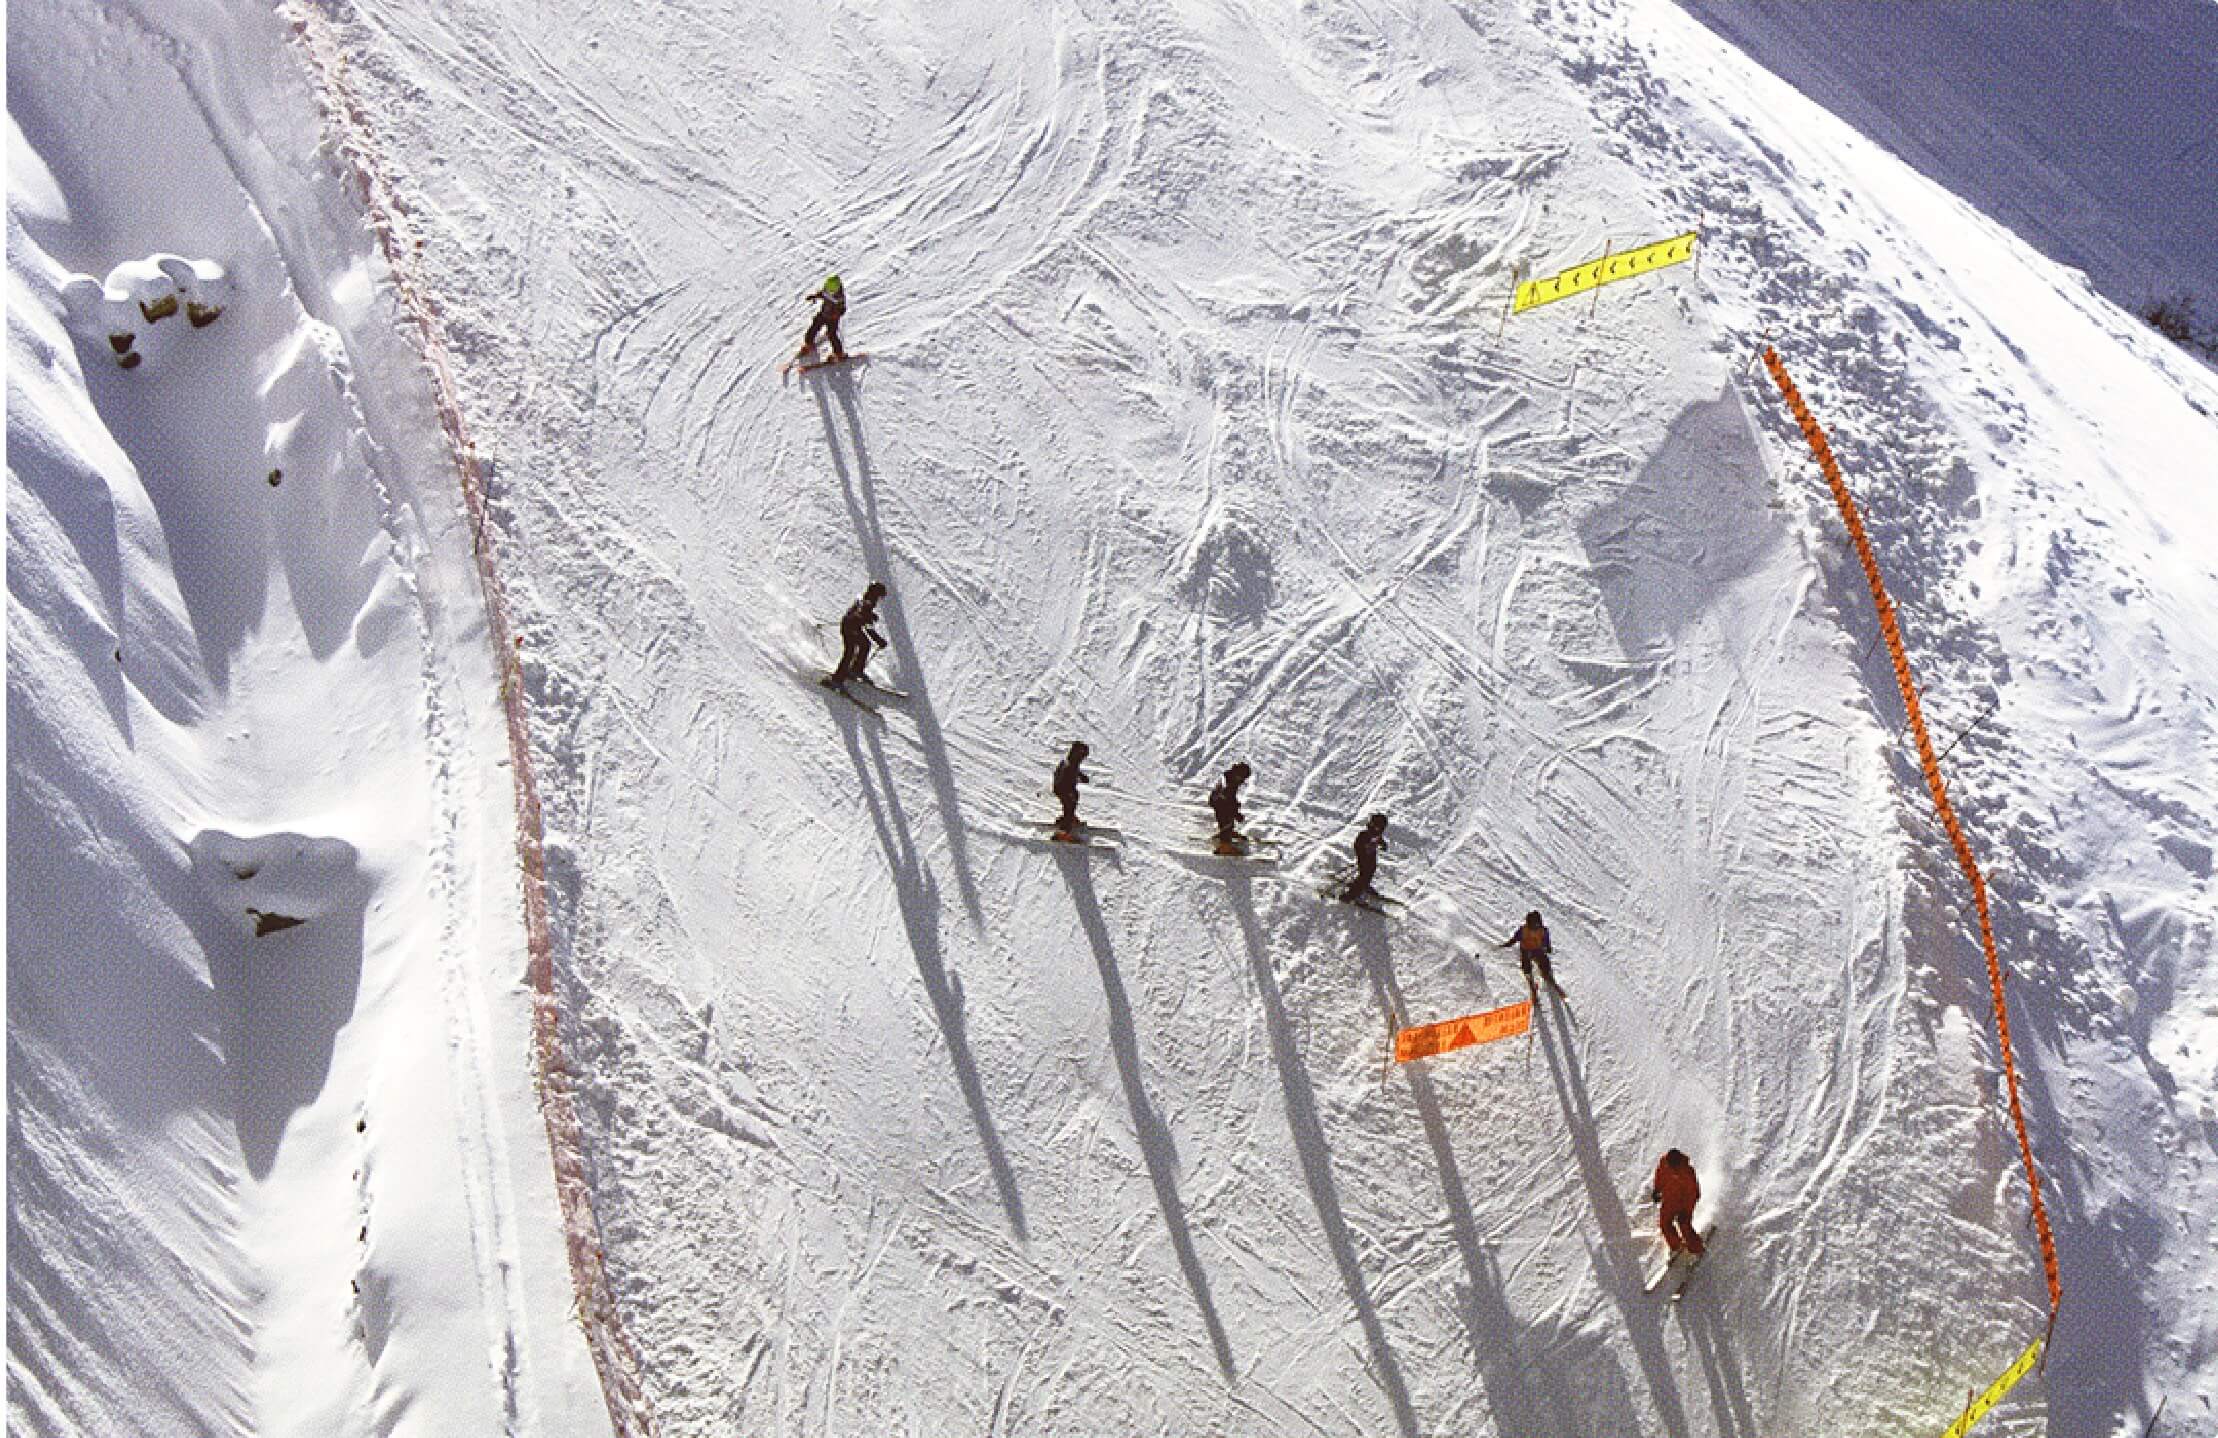 Ski Slope Lessons